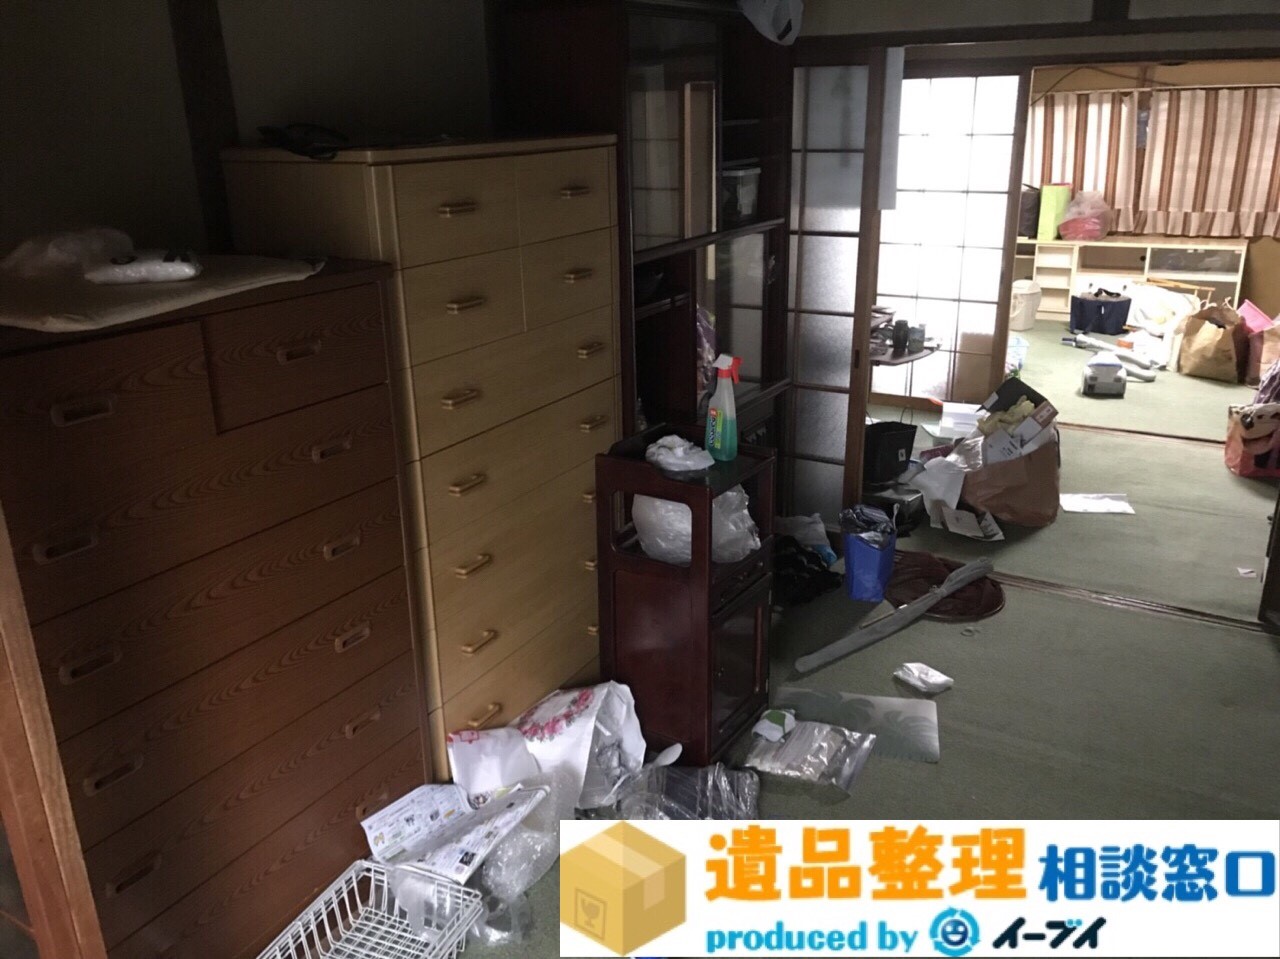 大阪府高石市で遺品整理に伴い家財道具の処分をしました。のアイキャッチ